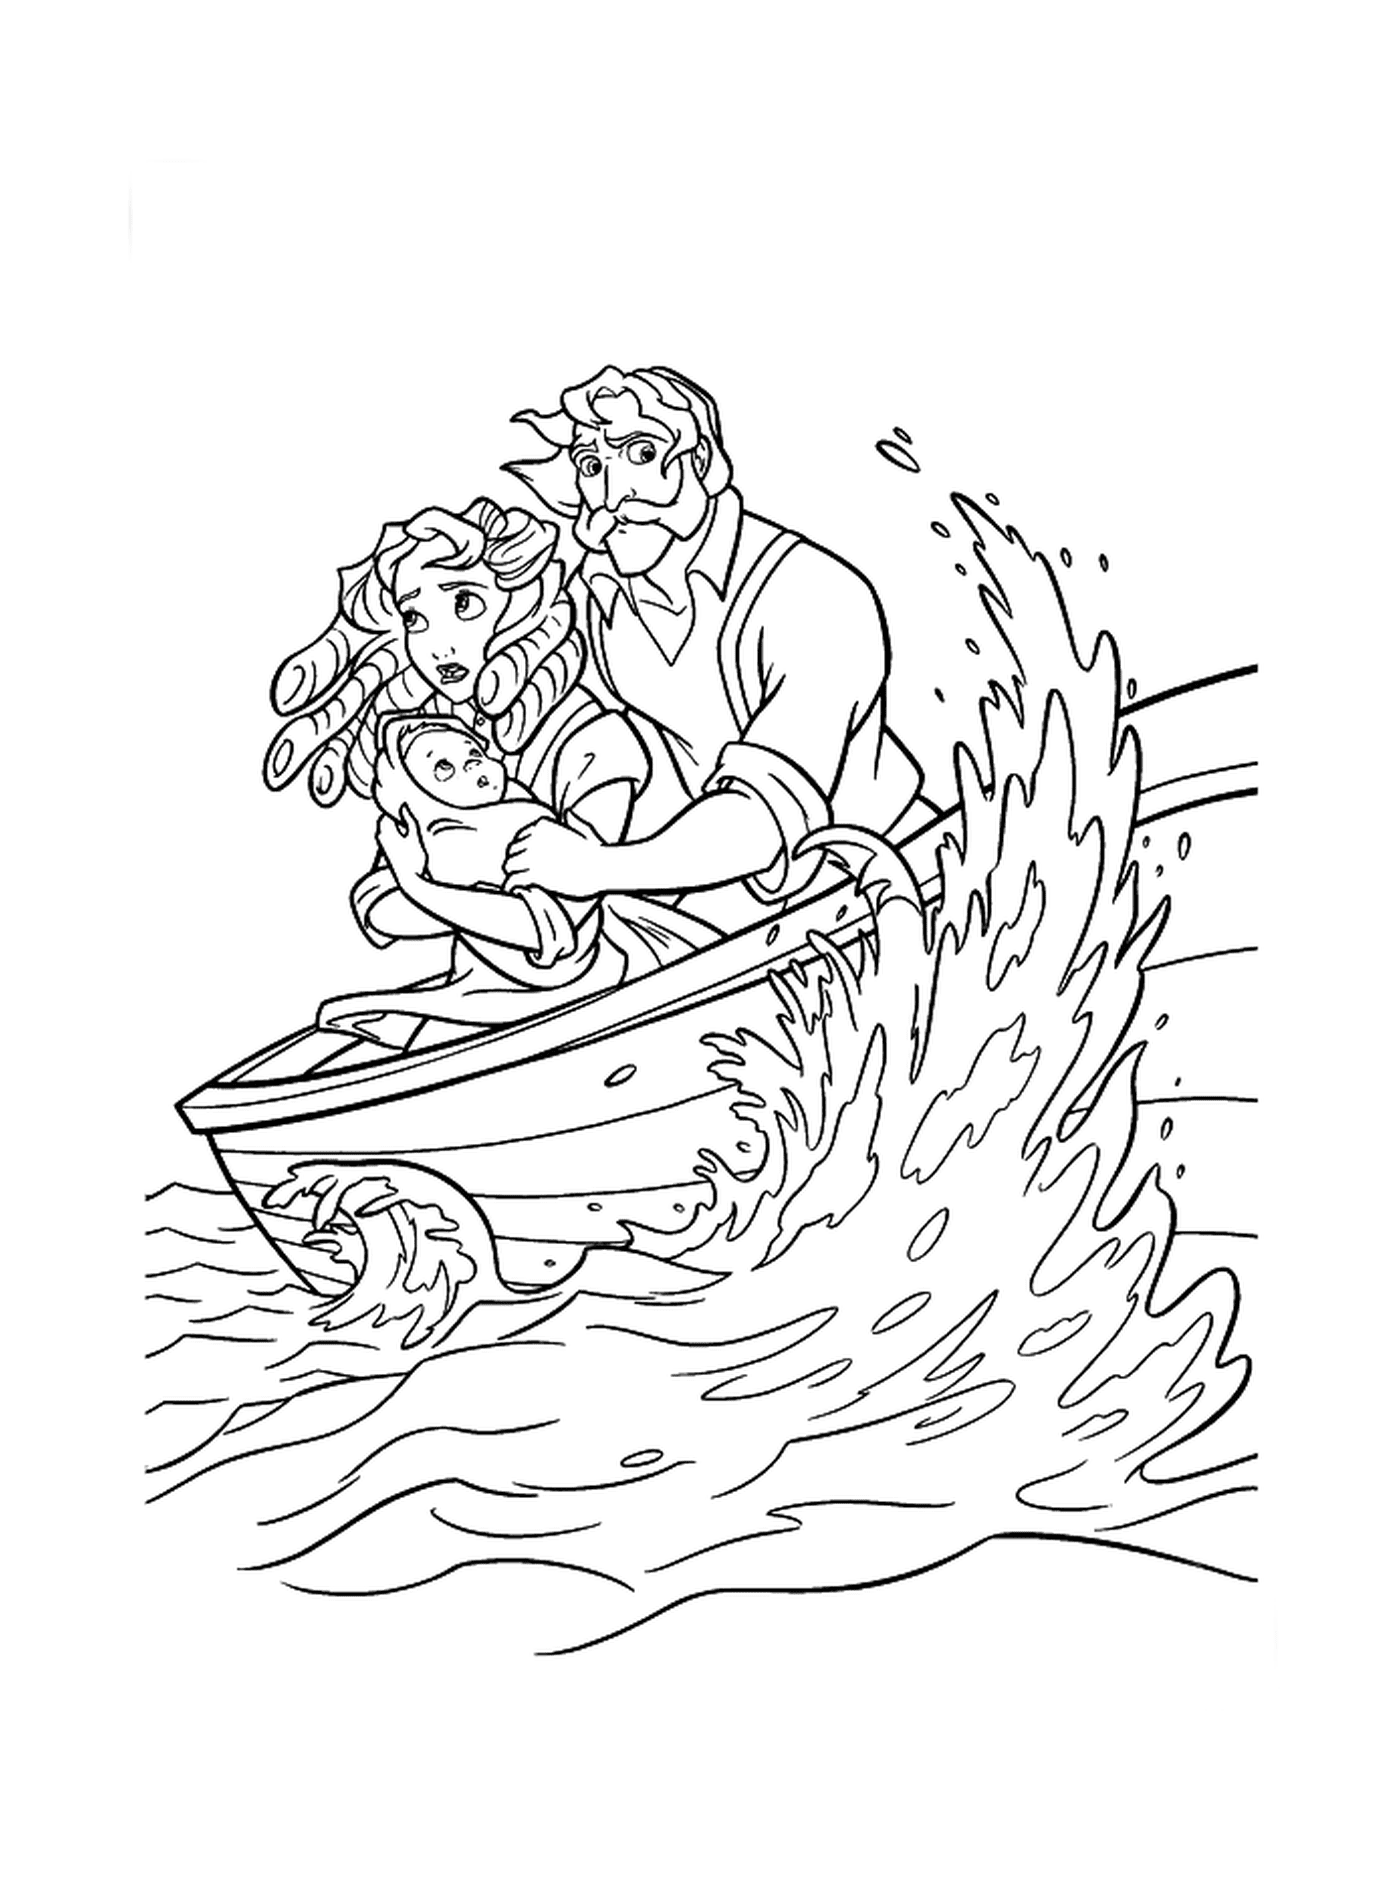  Una coppia in barca 